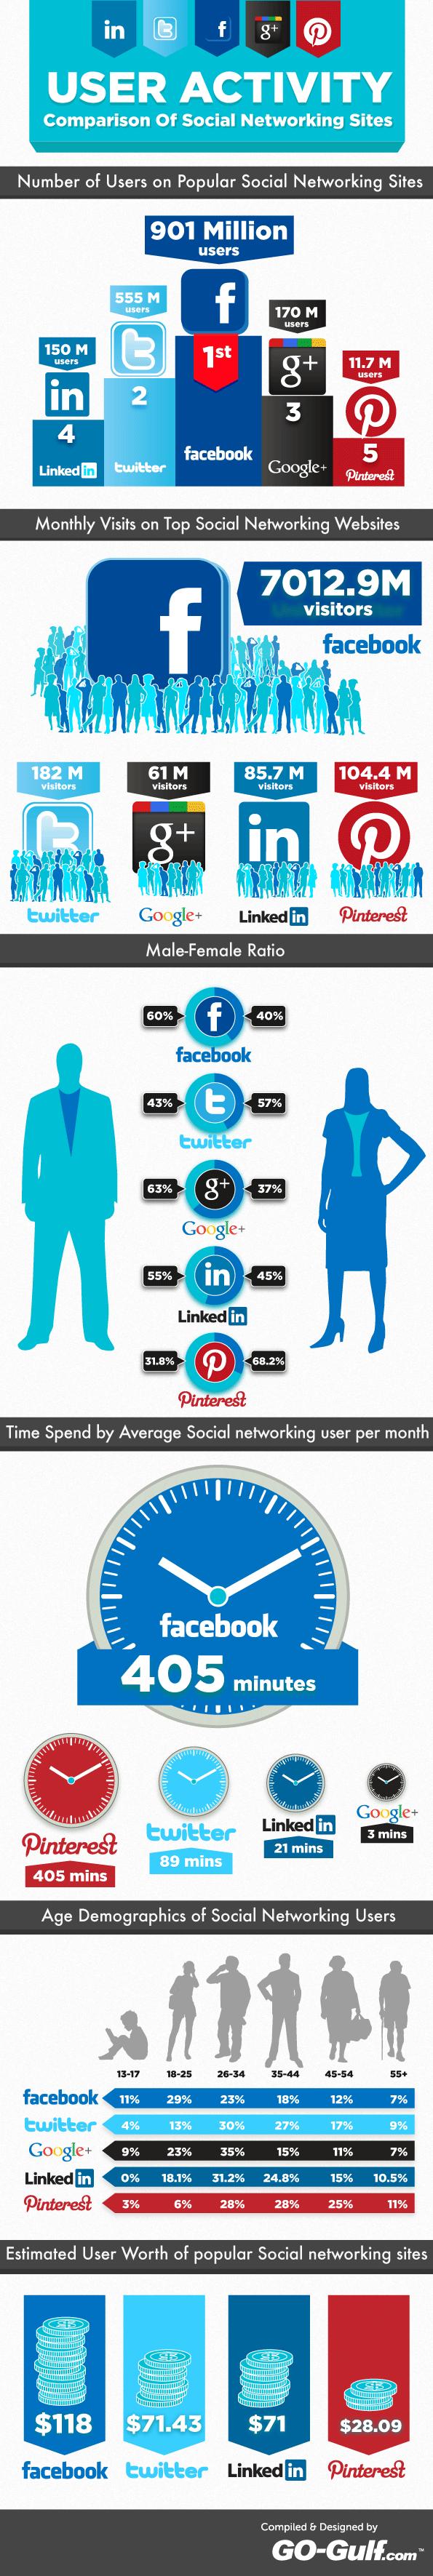 Infographie : Les statistiques des réseaux sociaux